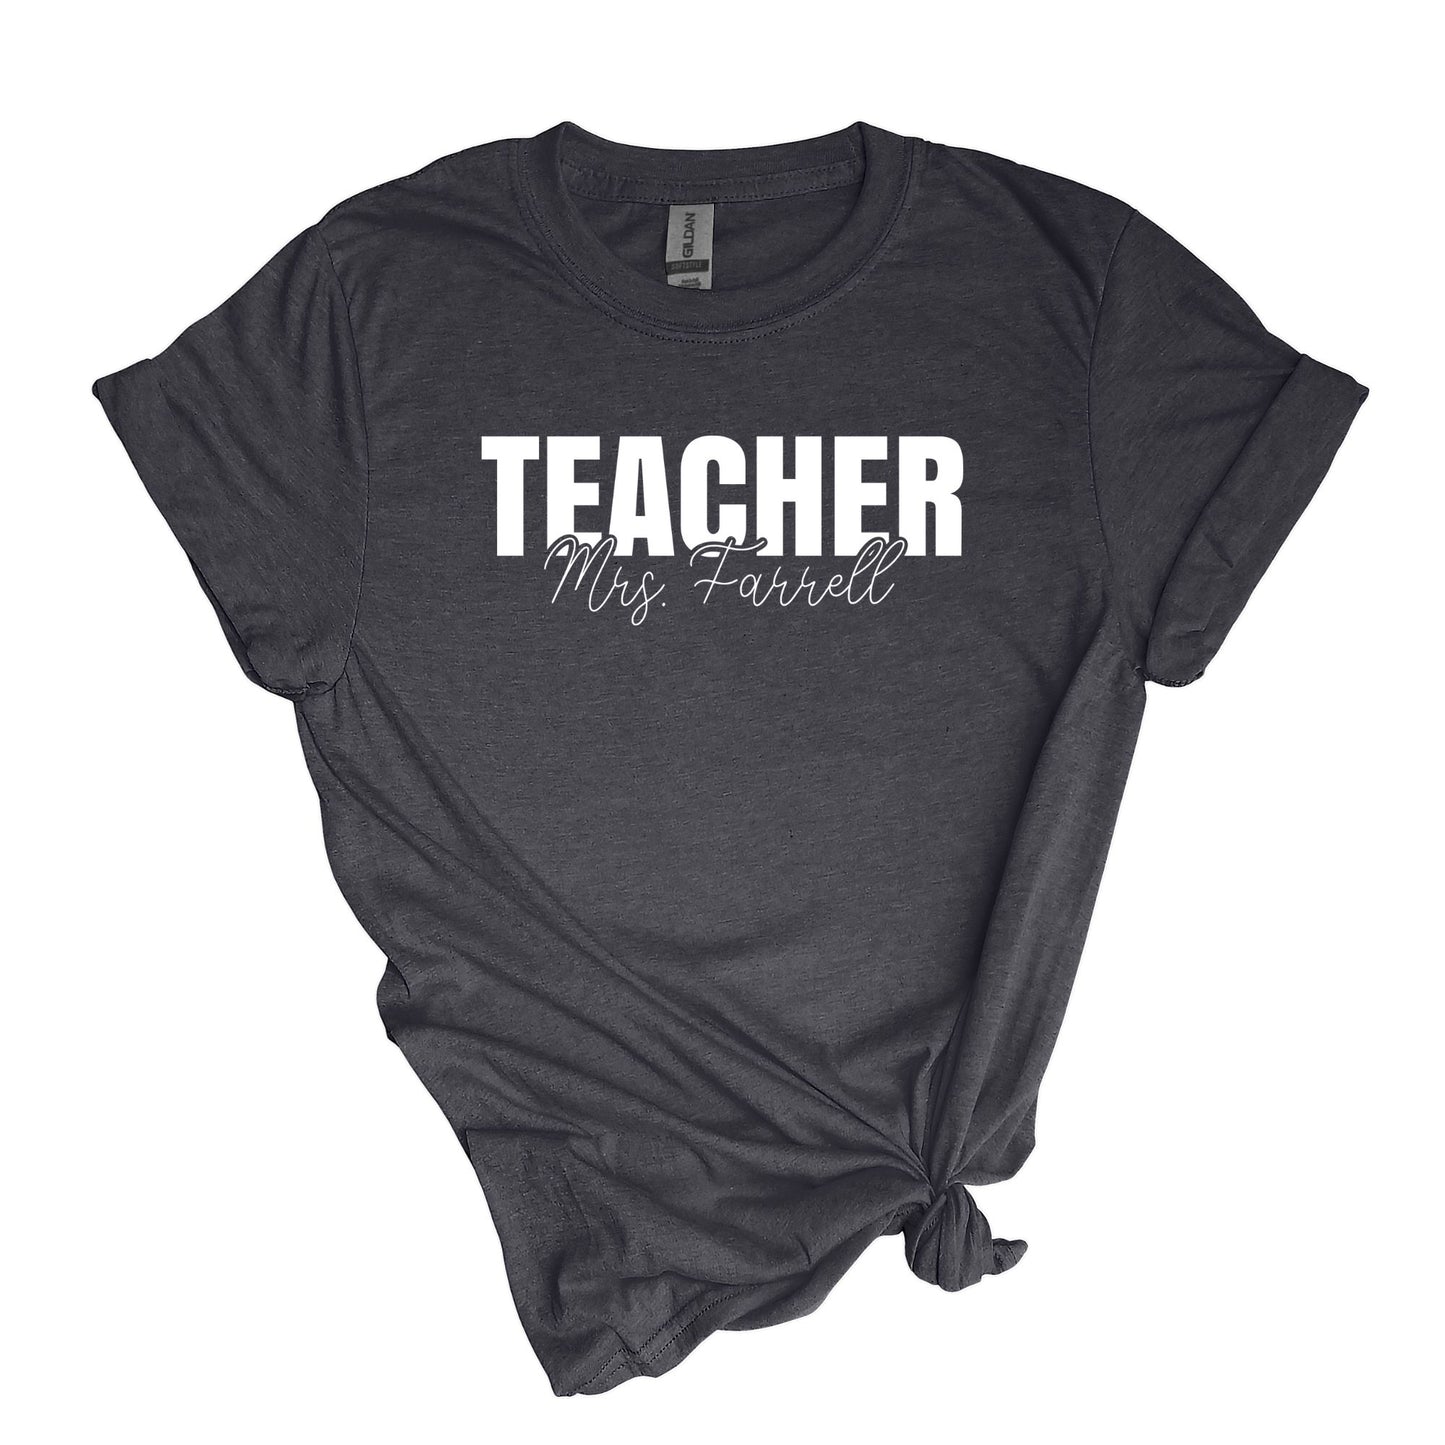 T-shirt ENSEIGNANT - Personnalisé avec le nom de l’enseignant ! 